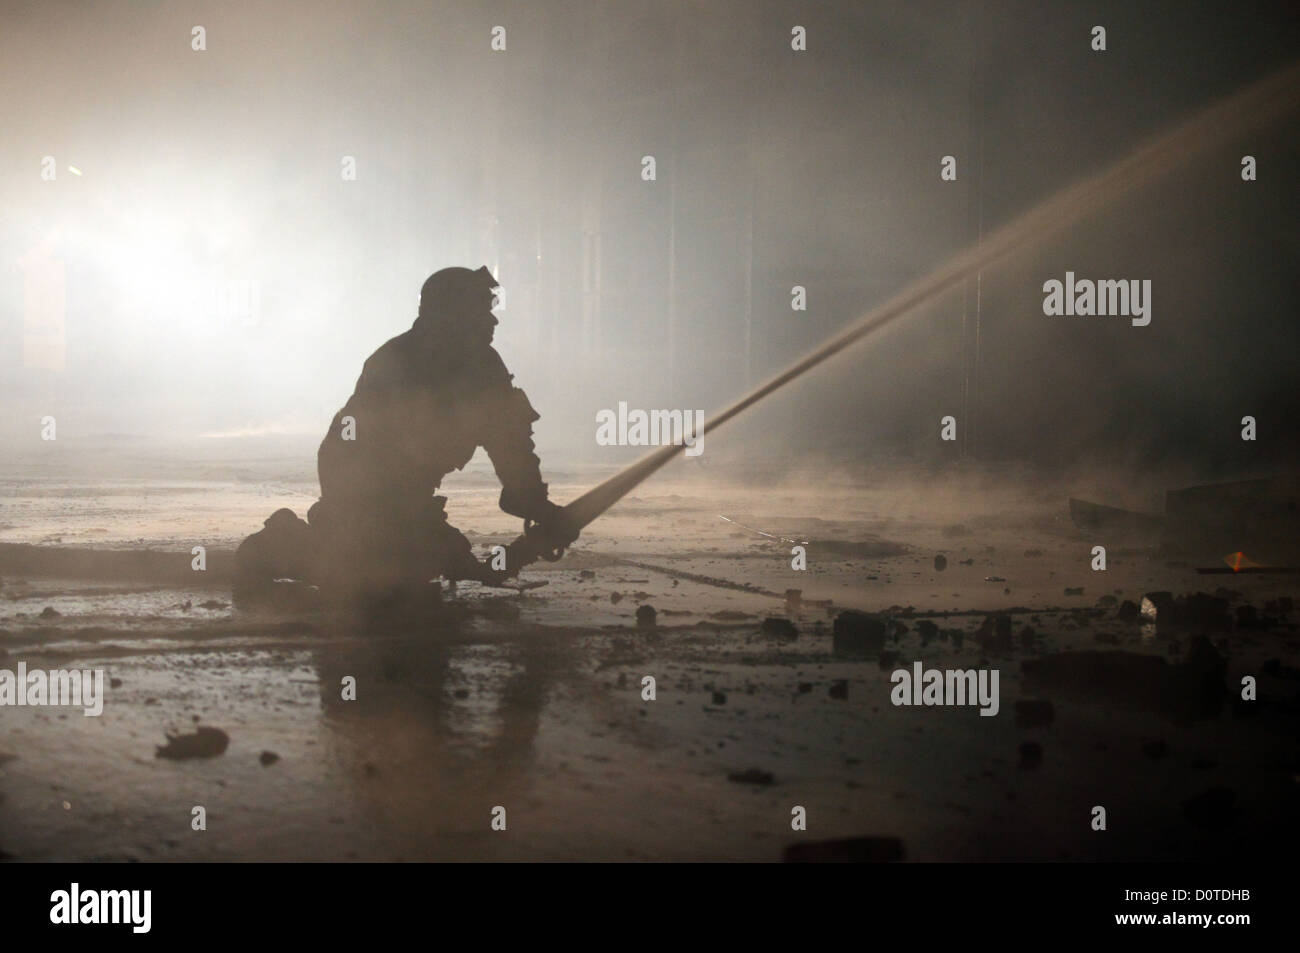 Berlin, Deutschland, die Silhouette eines Feuerwehrmannes zu löschen Stockfoto